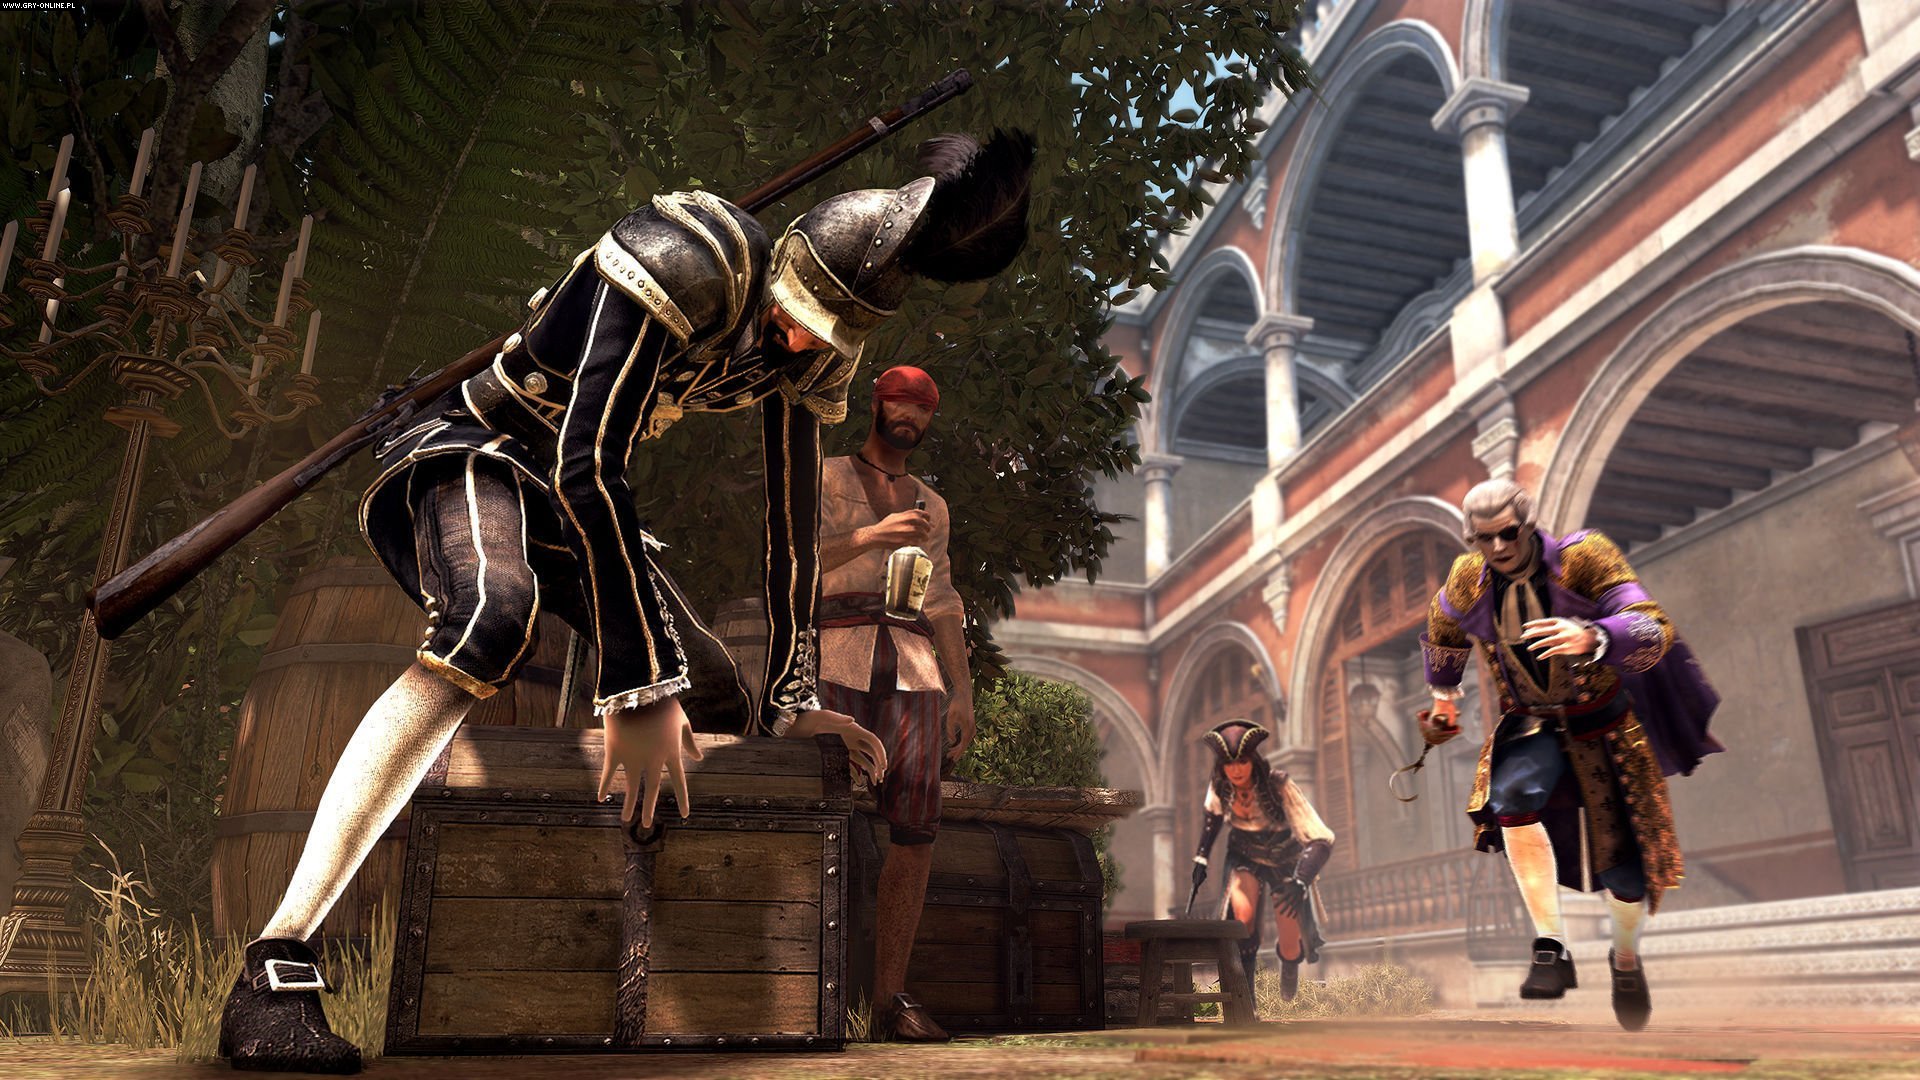 Fonds d'ecran Assassin's Creed Assassin's Creed 4 Black Flag